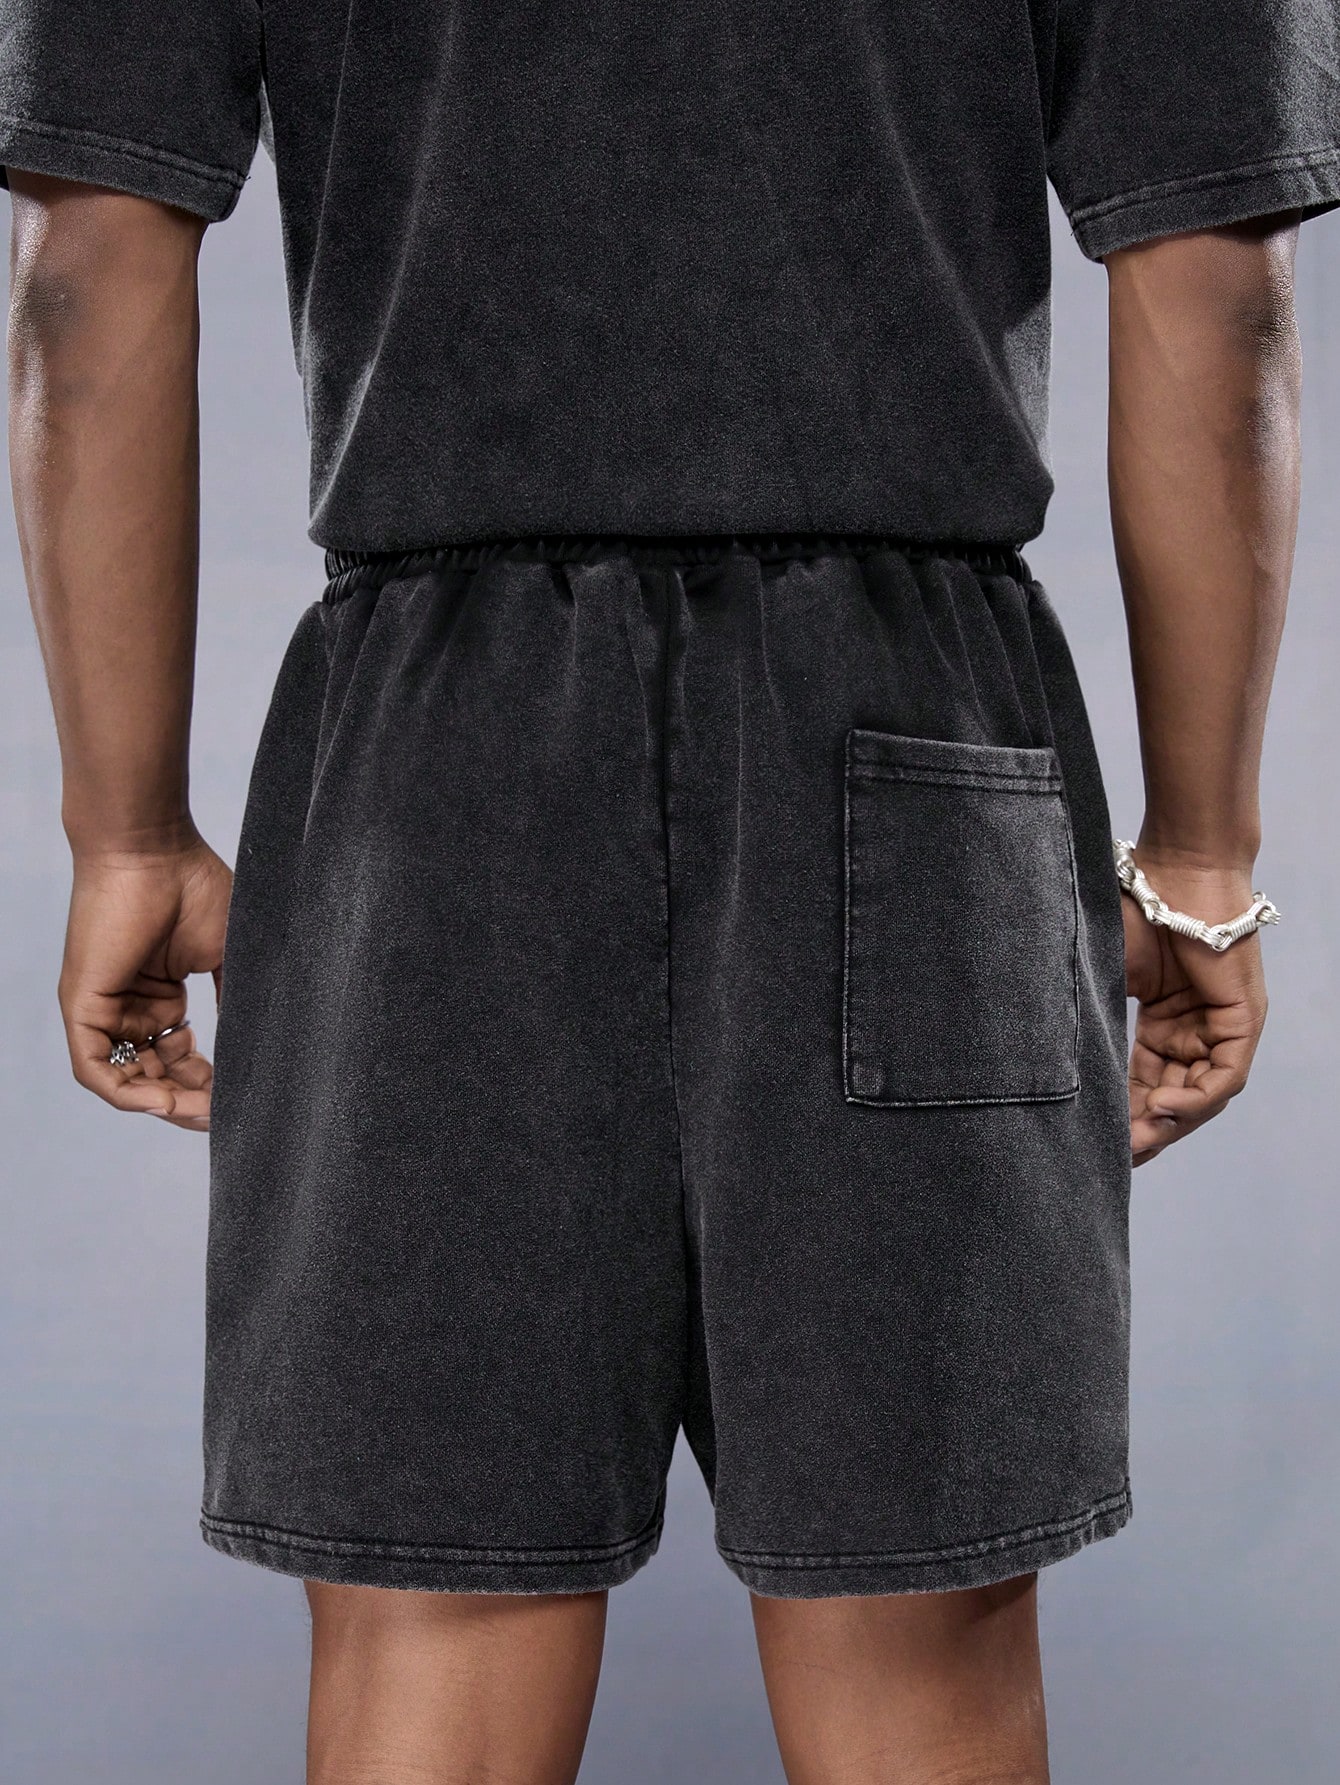 цена Manfinity StreetEZ Мужские однотонные трикотажные повседневные шорты с эластичной резинкой на талии, темно-серый